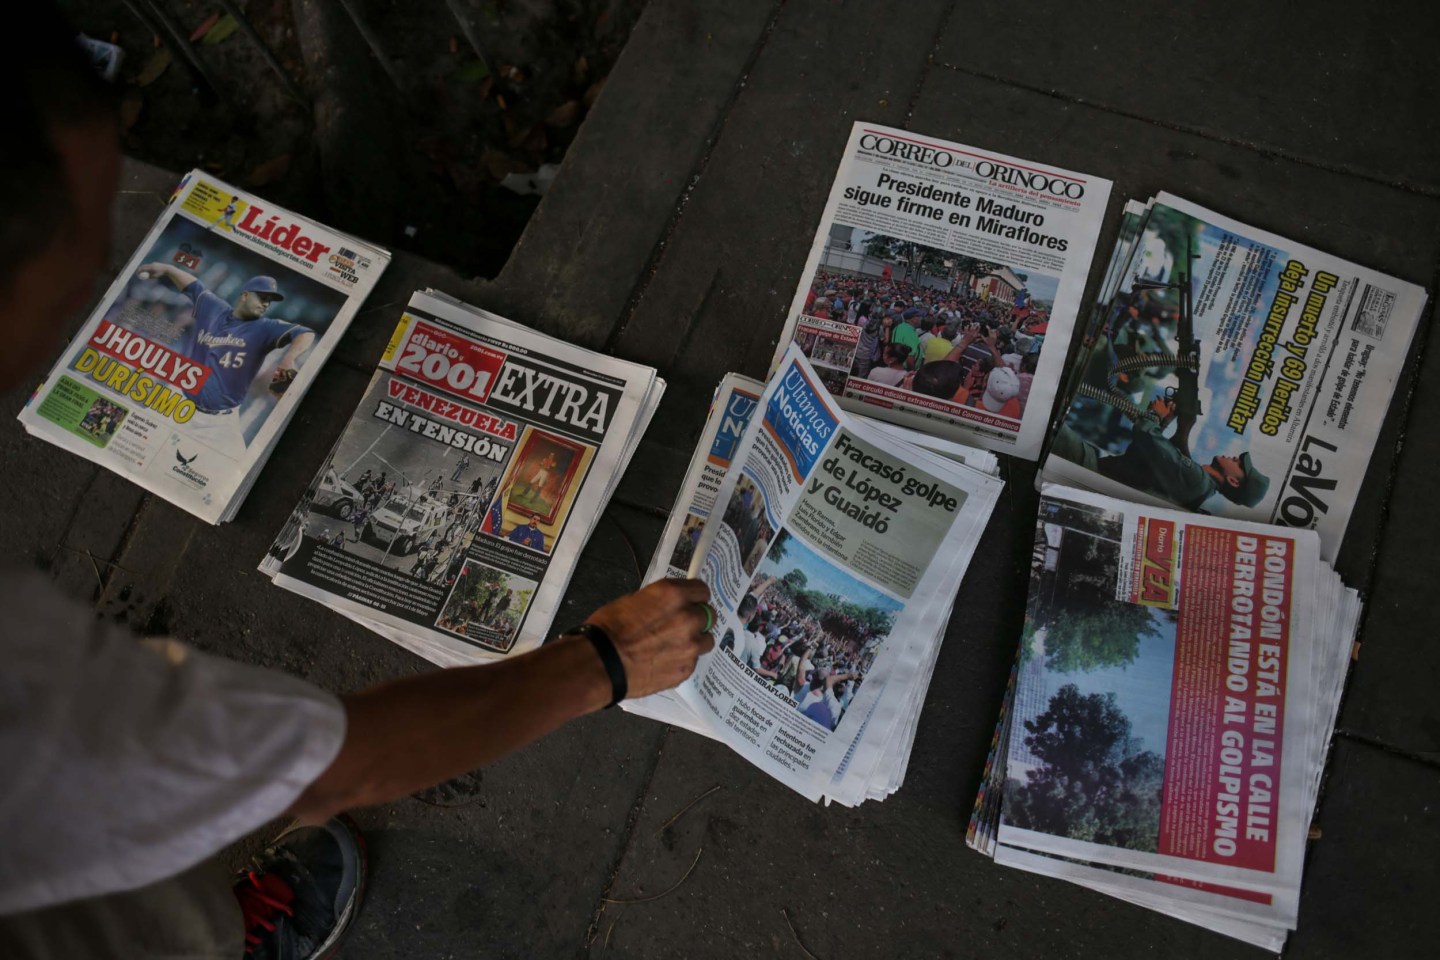 Reporteros Sin Fronteras: Venezuela, Nicaragua, Cuba entre los peores países para la libertad de prensa